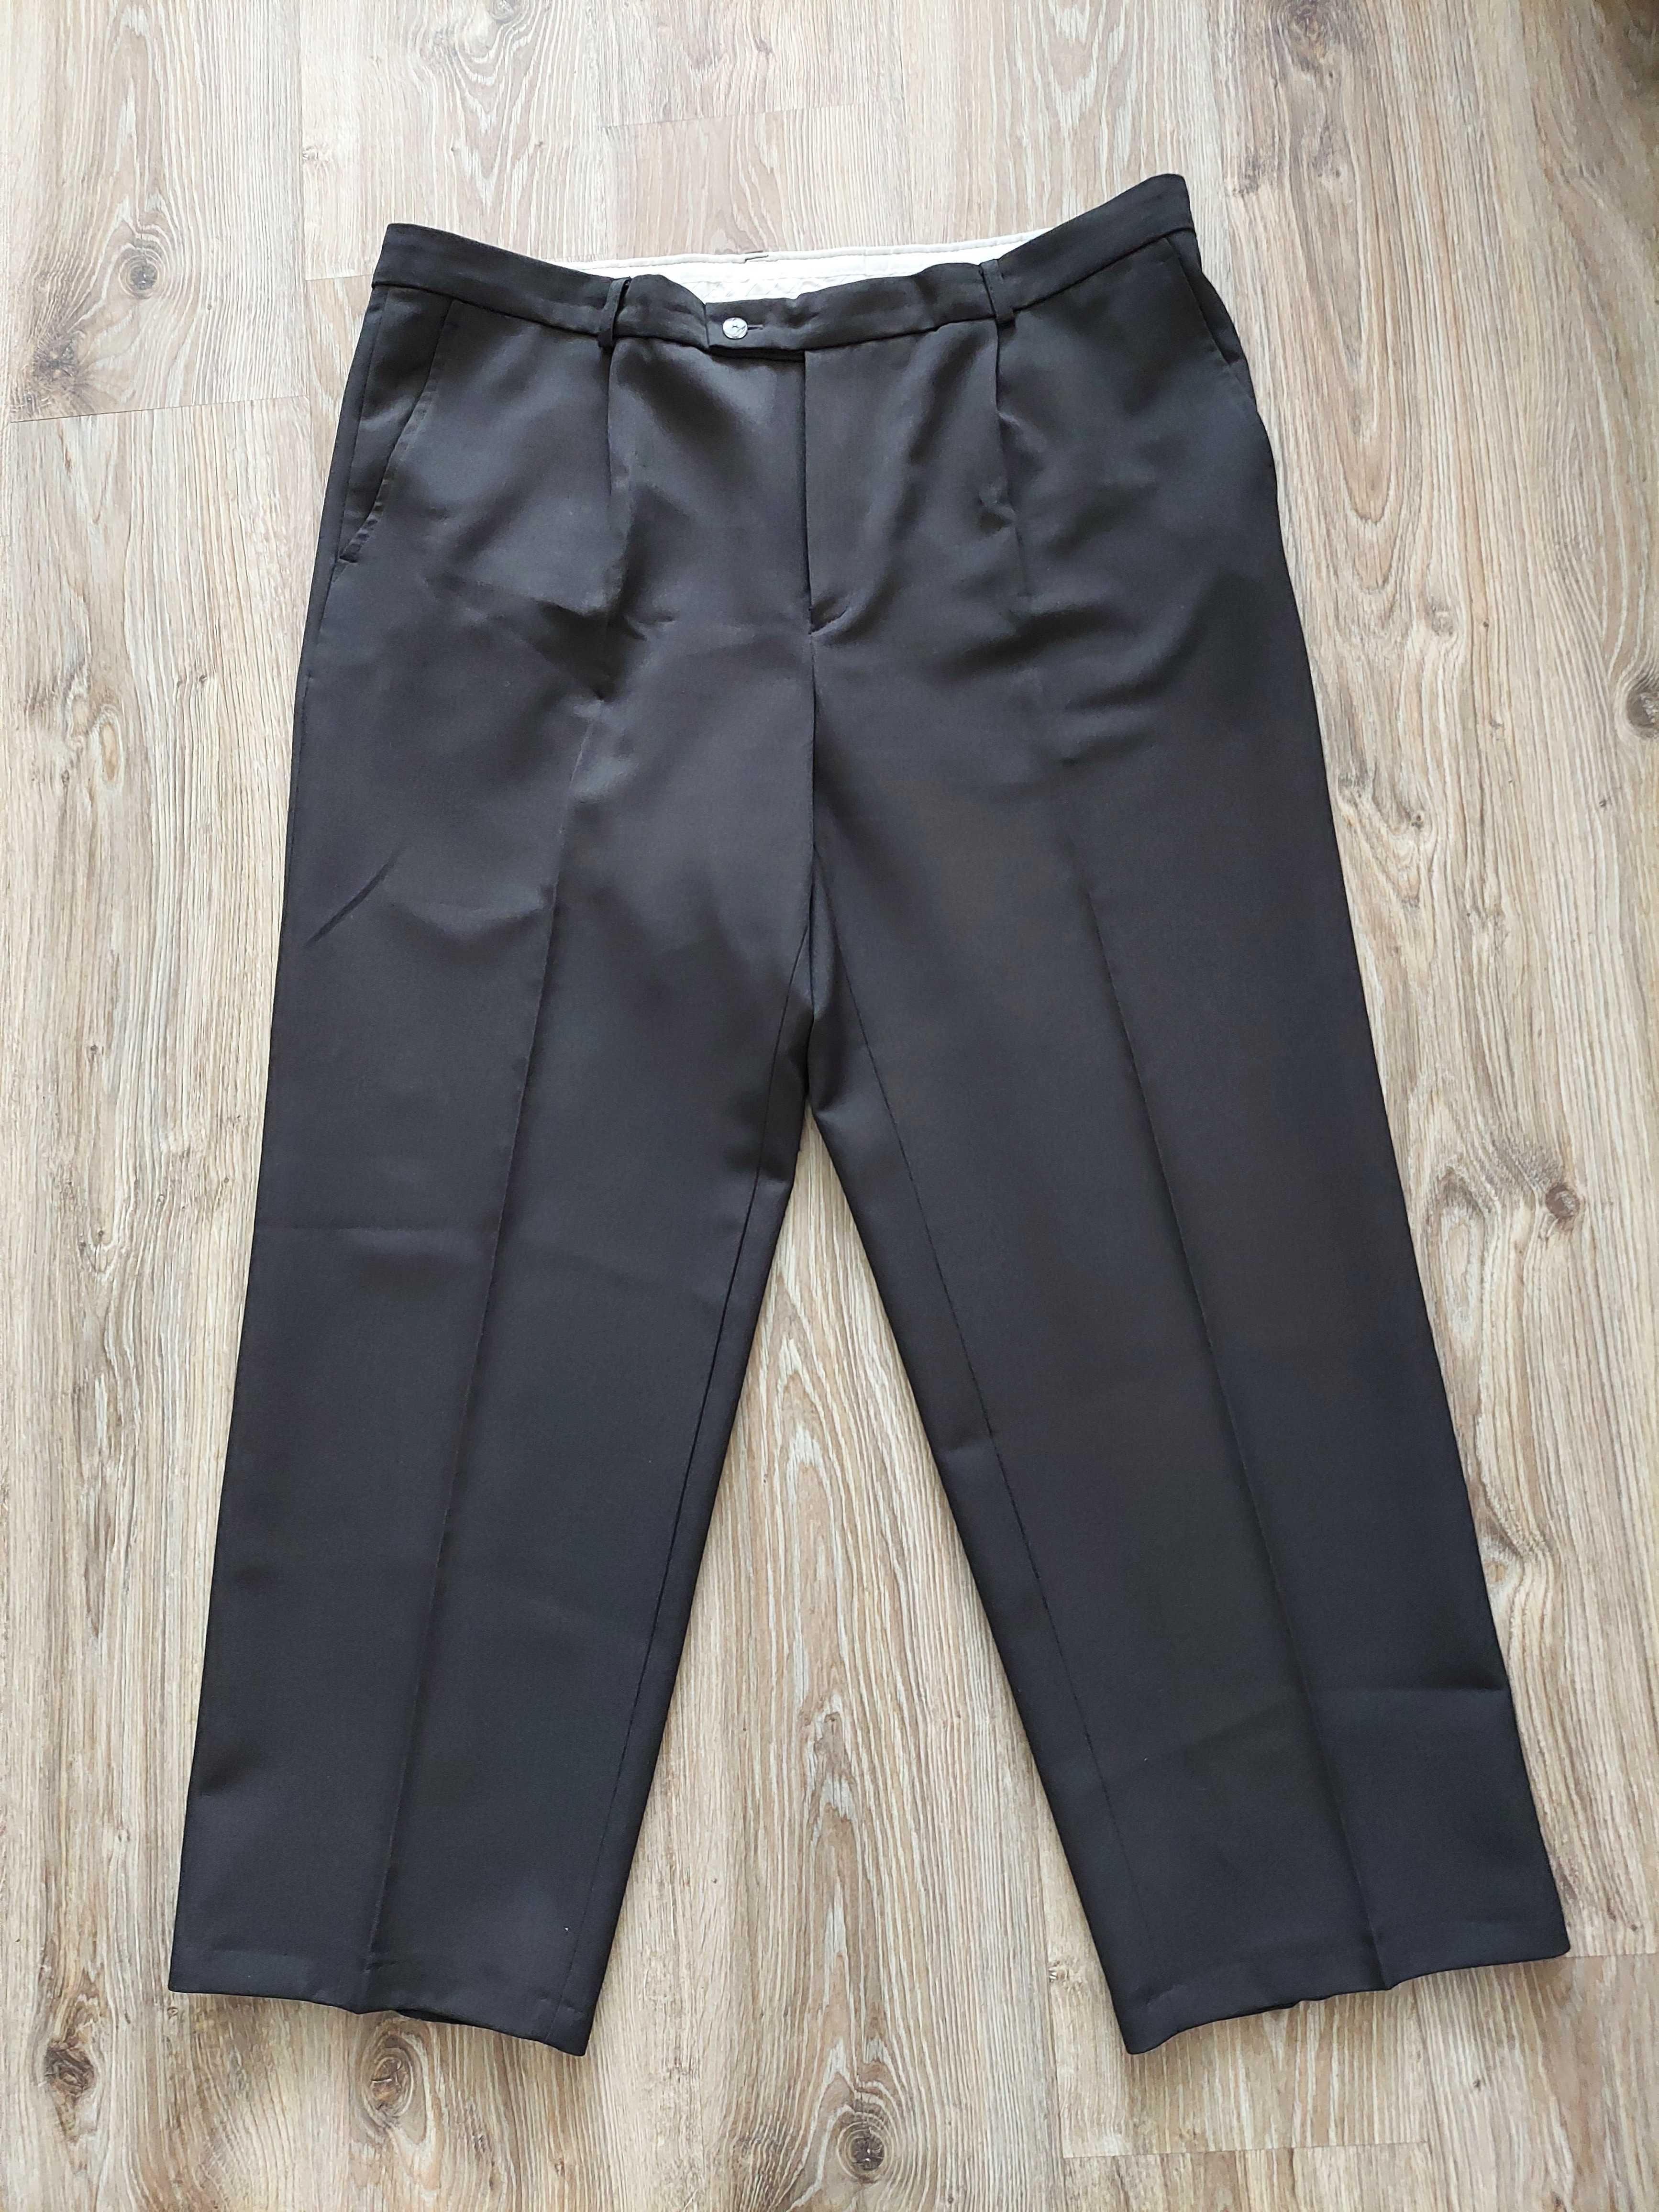 Spodnie garniturowe WADREX 168-170